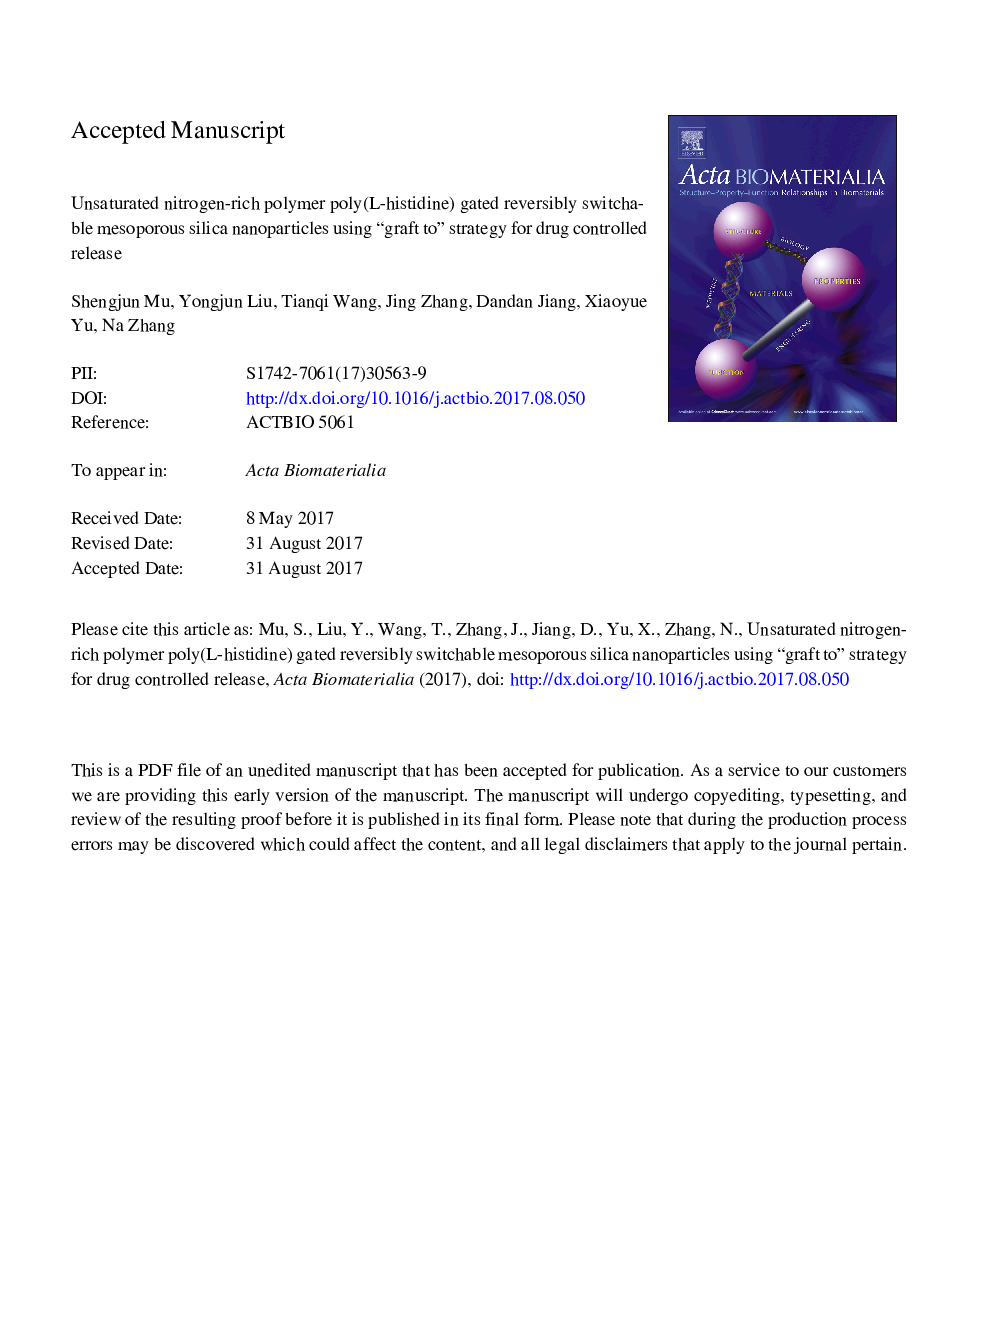 پلی متیل نیتروژن غنی از اشباع نیتروژن (ال-هیستیدین) دارای نانوذرات سیلیکای مزوزوپور قابل بازگشت است که با استفاده از پیوند چربی استراتژی برای کنترل مواد مخدر 